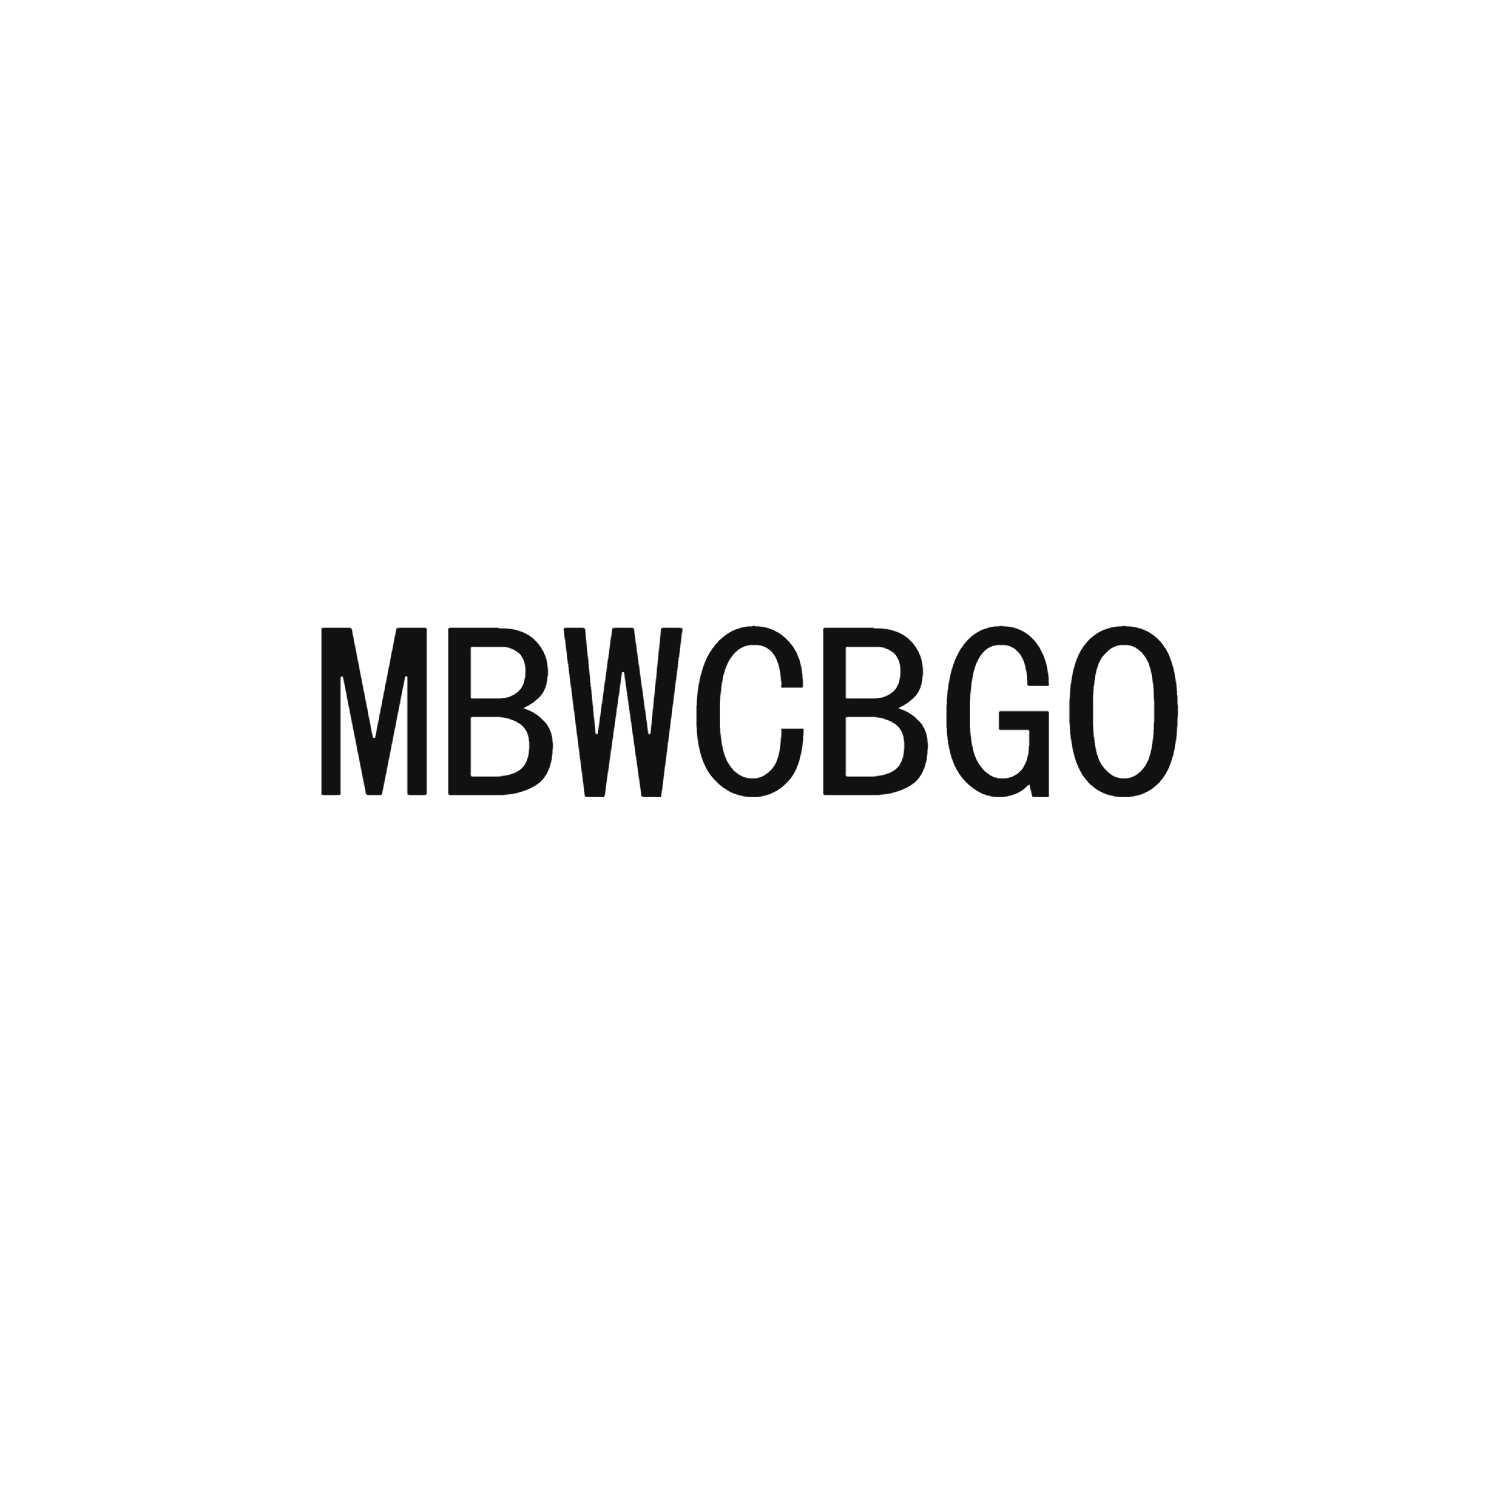 MBWCBGO